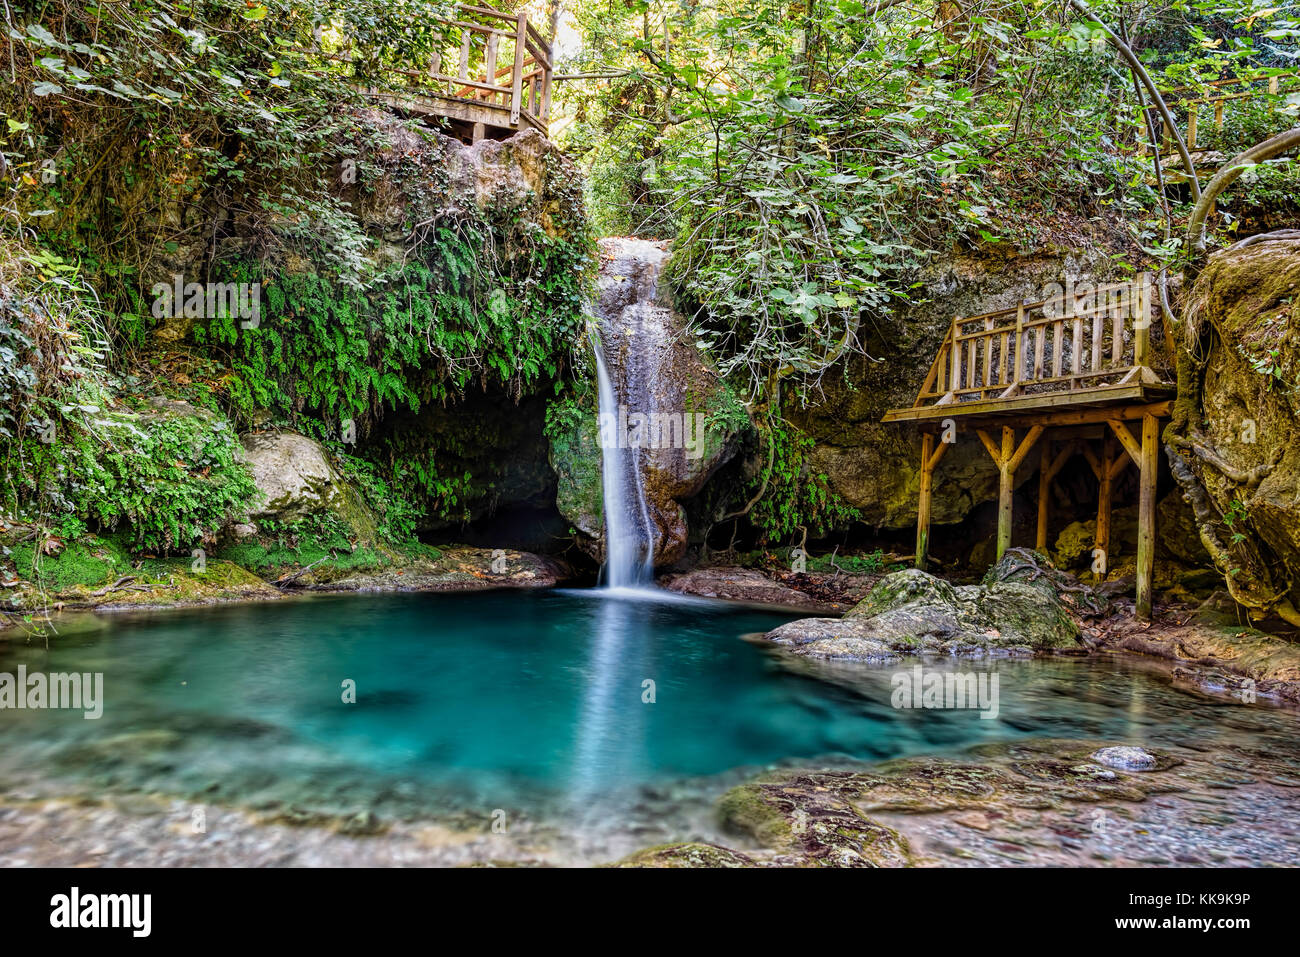 Turgut falls, una piccola cascata di scala, bianco setosa acqua cadere in acquario blue ancora stagno, orhaniye mahallesi, Marmaris, mugla, Turchia Foto Stock